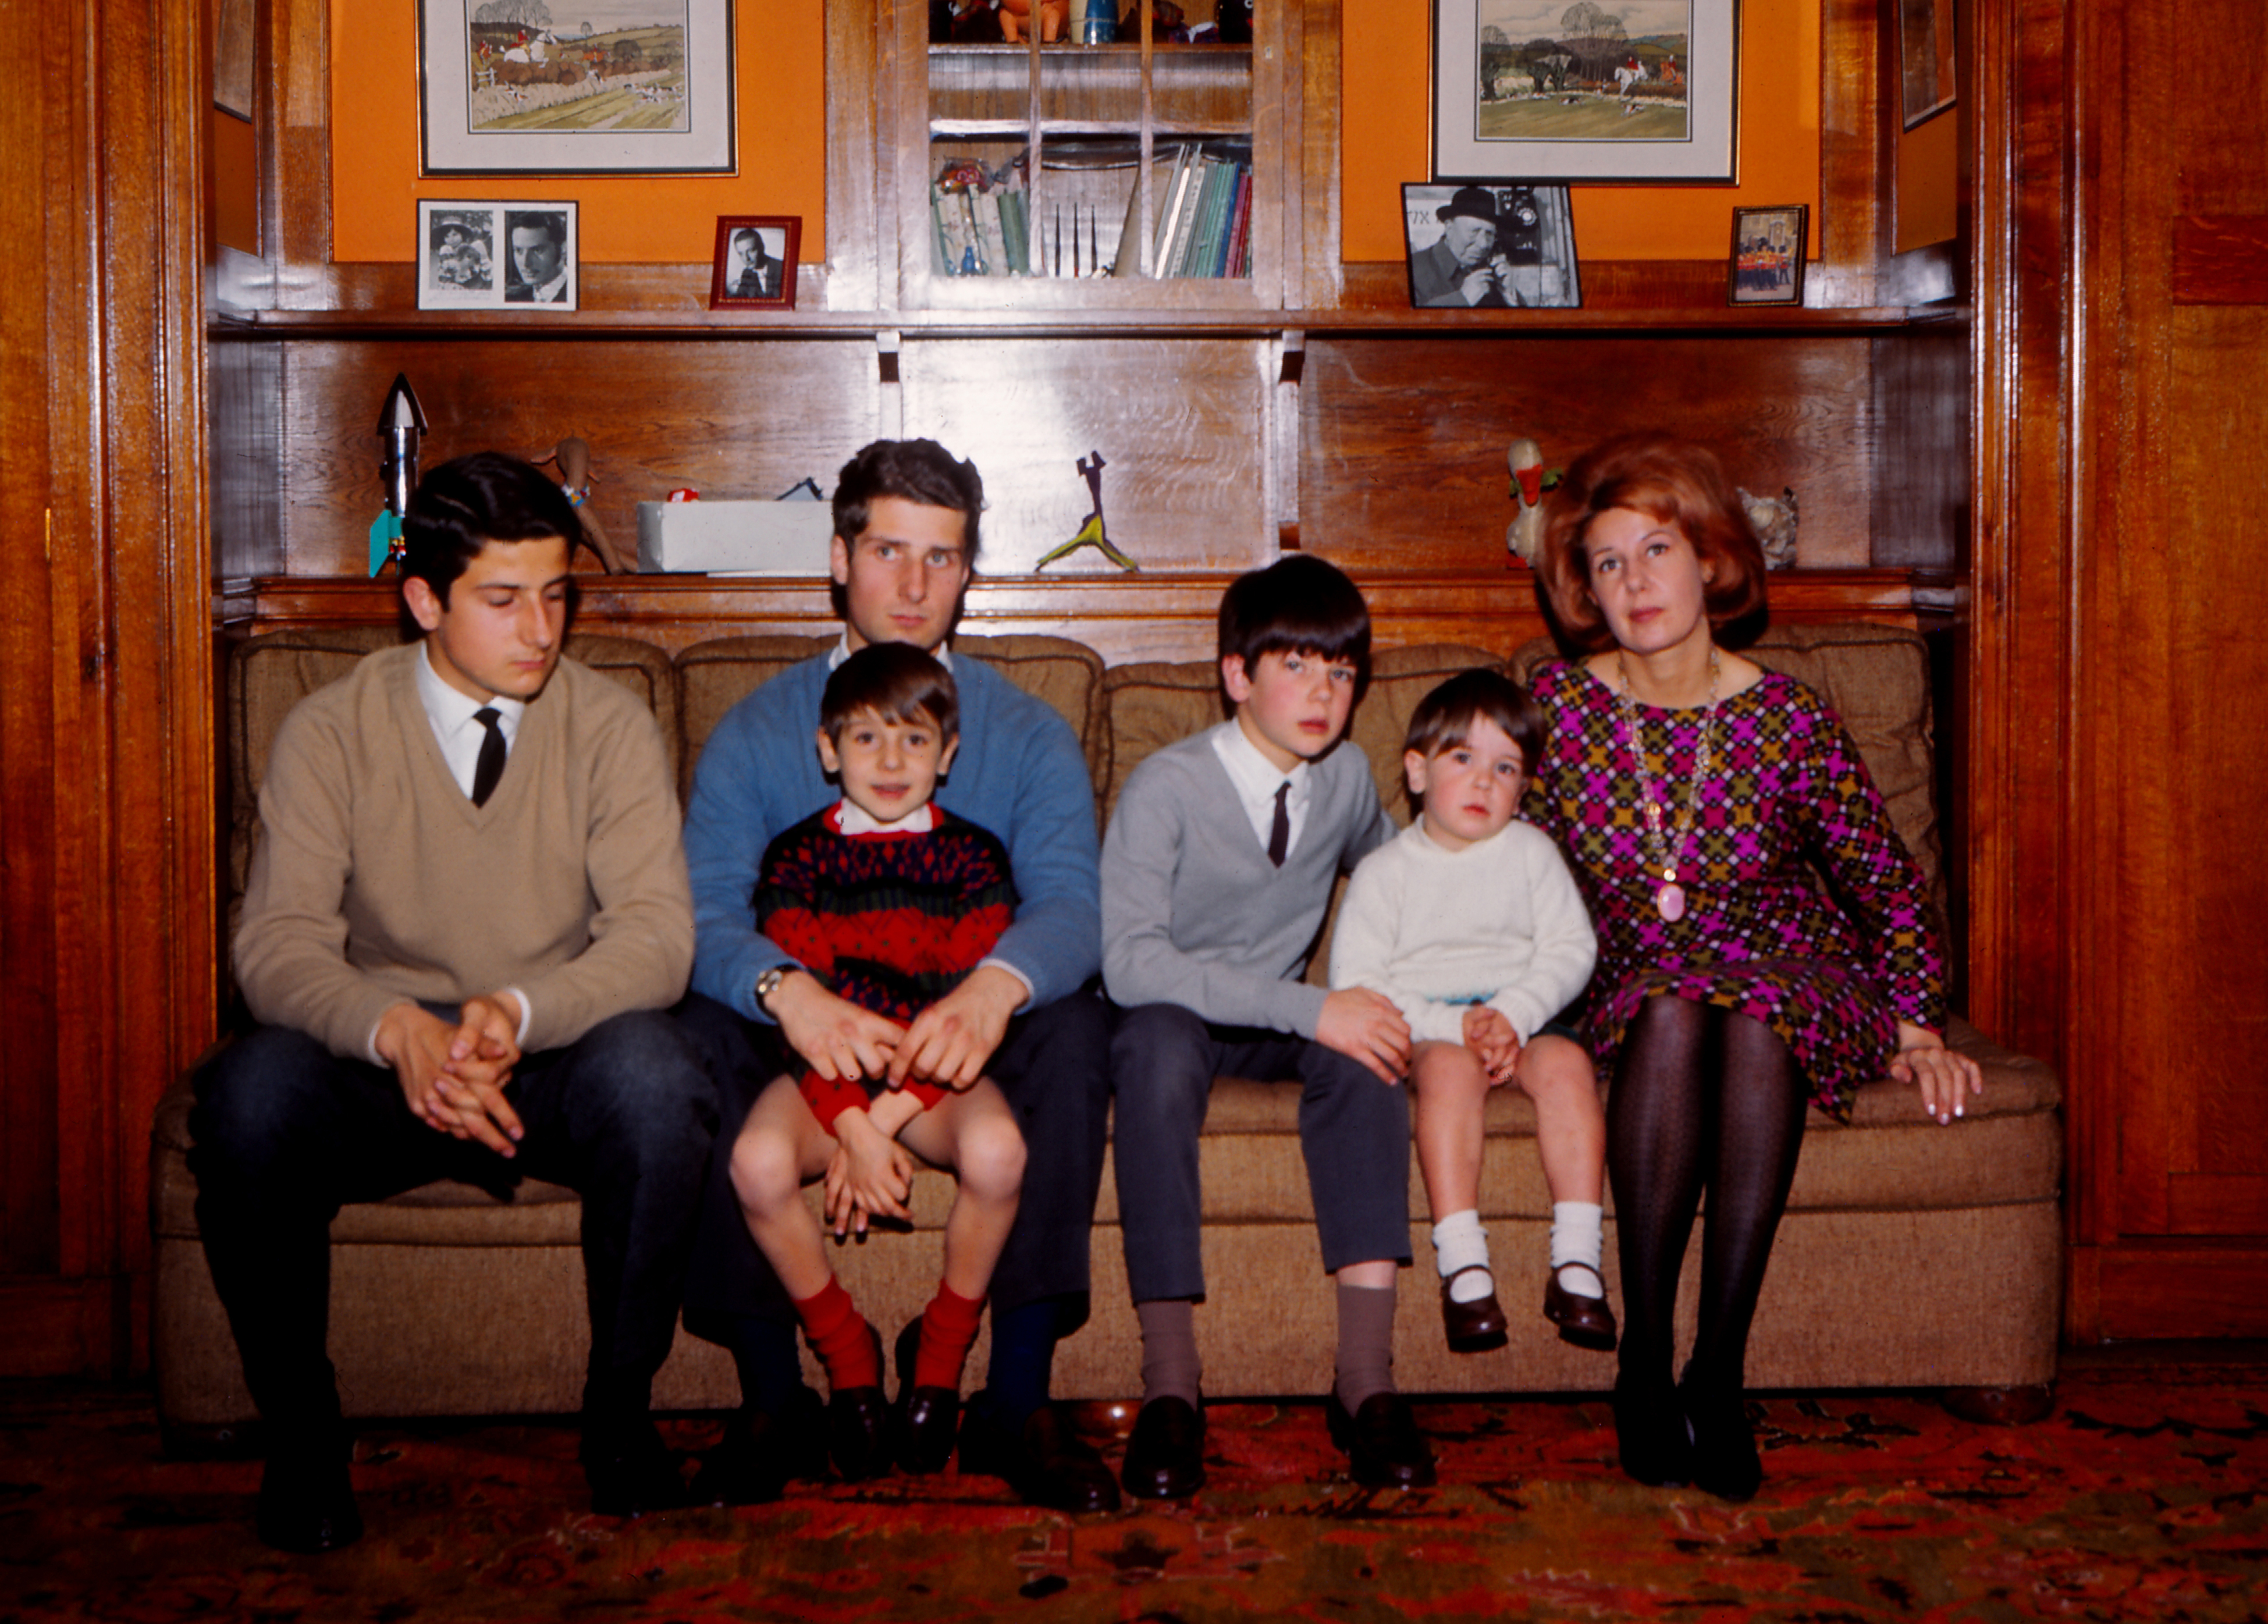 La duchesse d'Alba, Maria del Rosario Cayetana Fitz-James-Stuart avec ses enfants à Madrid, Espagne, le 25 février 1966 | Source : Getty Images